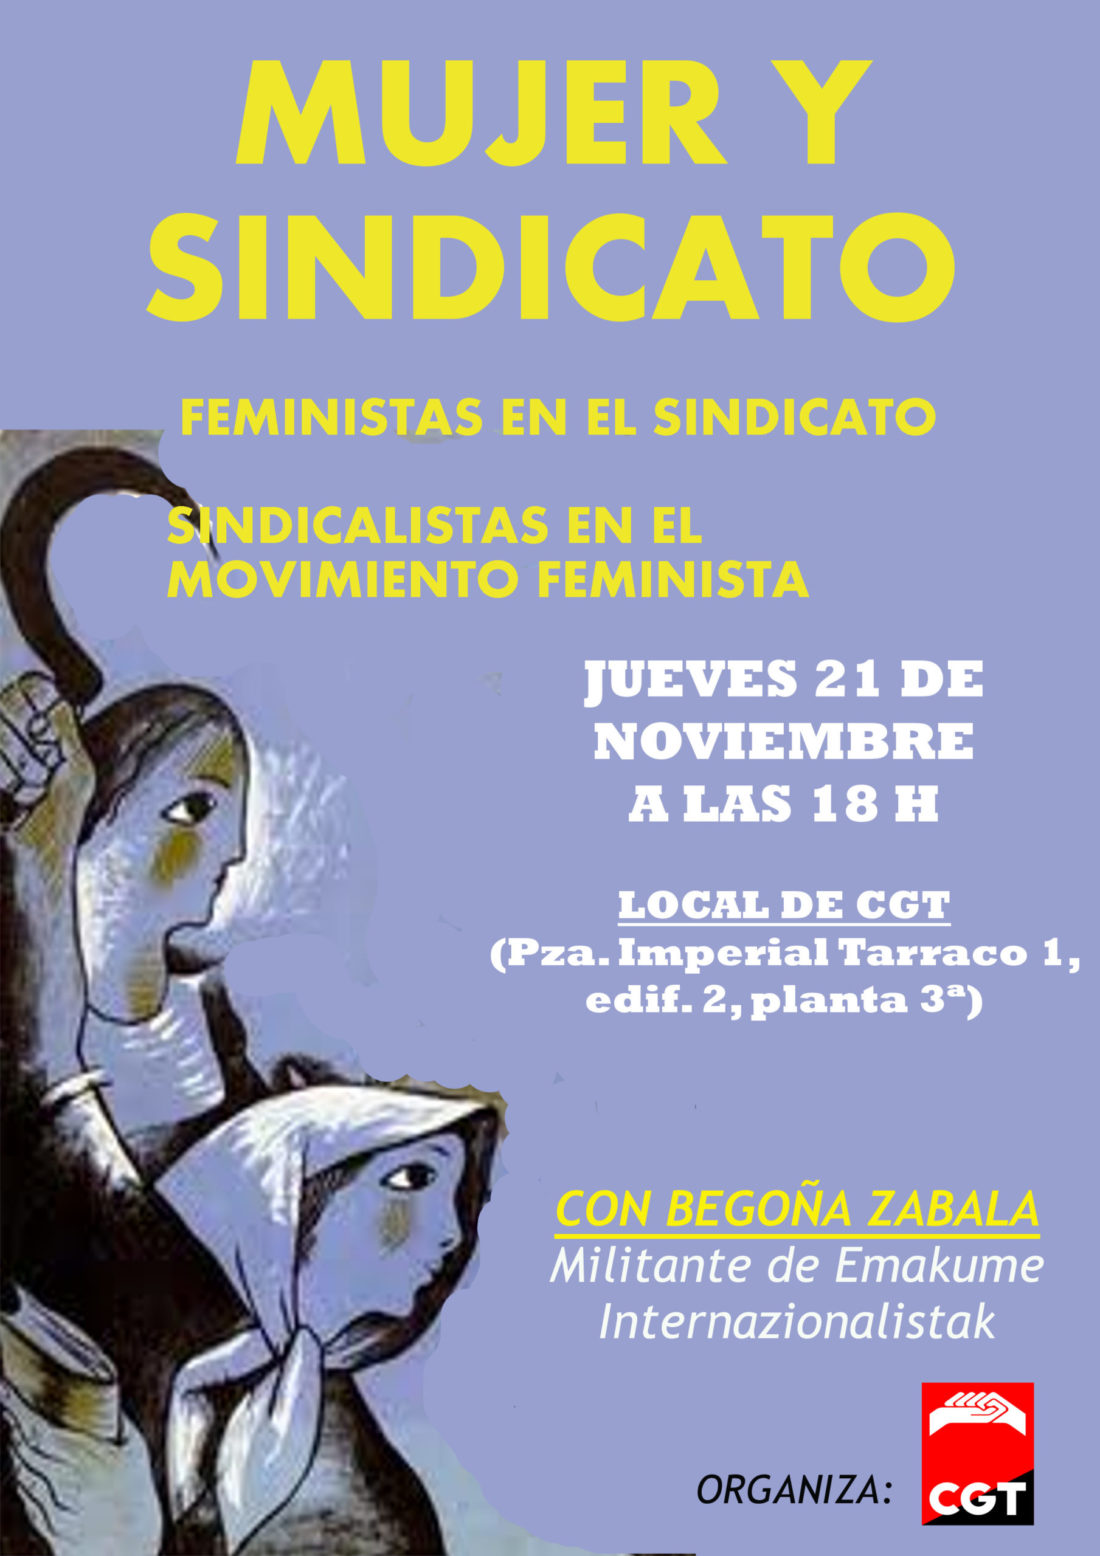 «Mujeres y sindicato. Feministas en el sindicato, sindicalistas en el movimiento feminista»